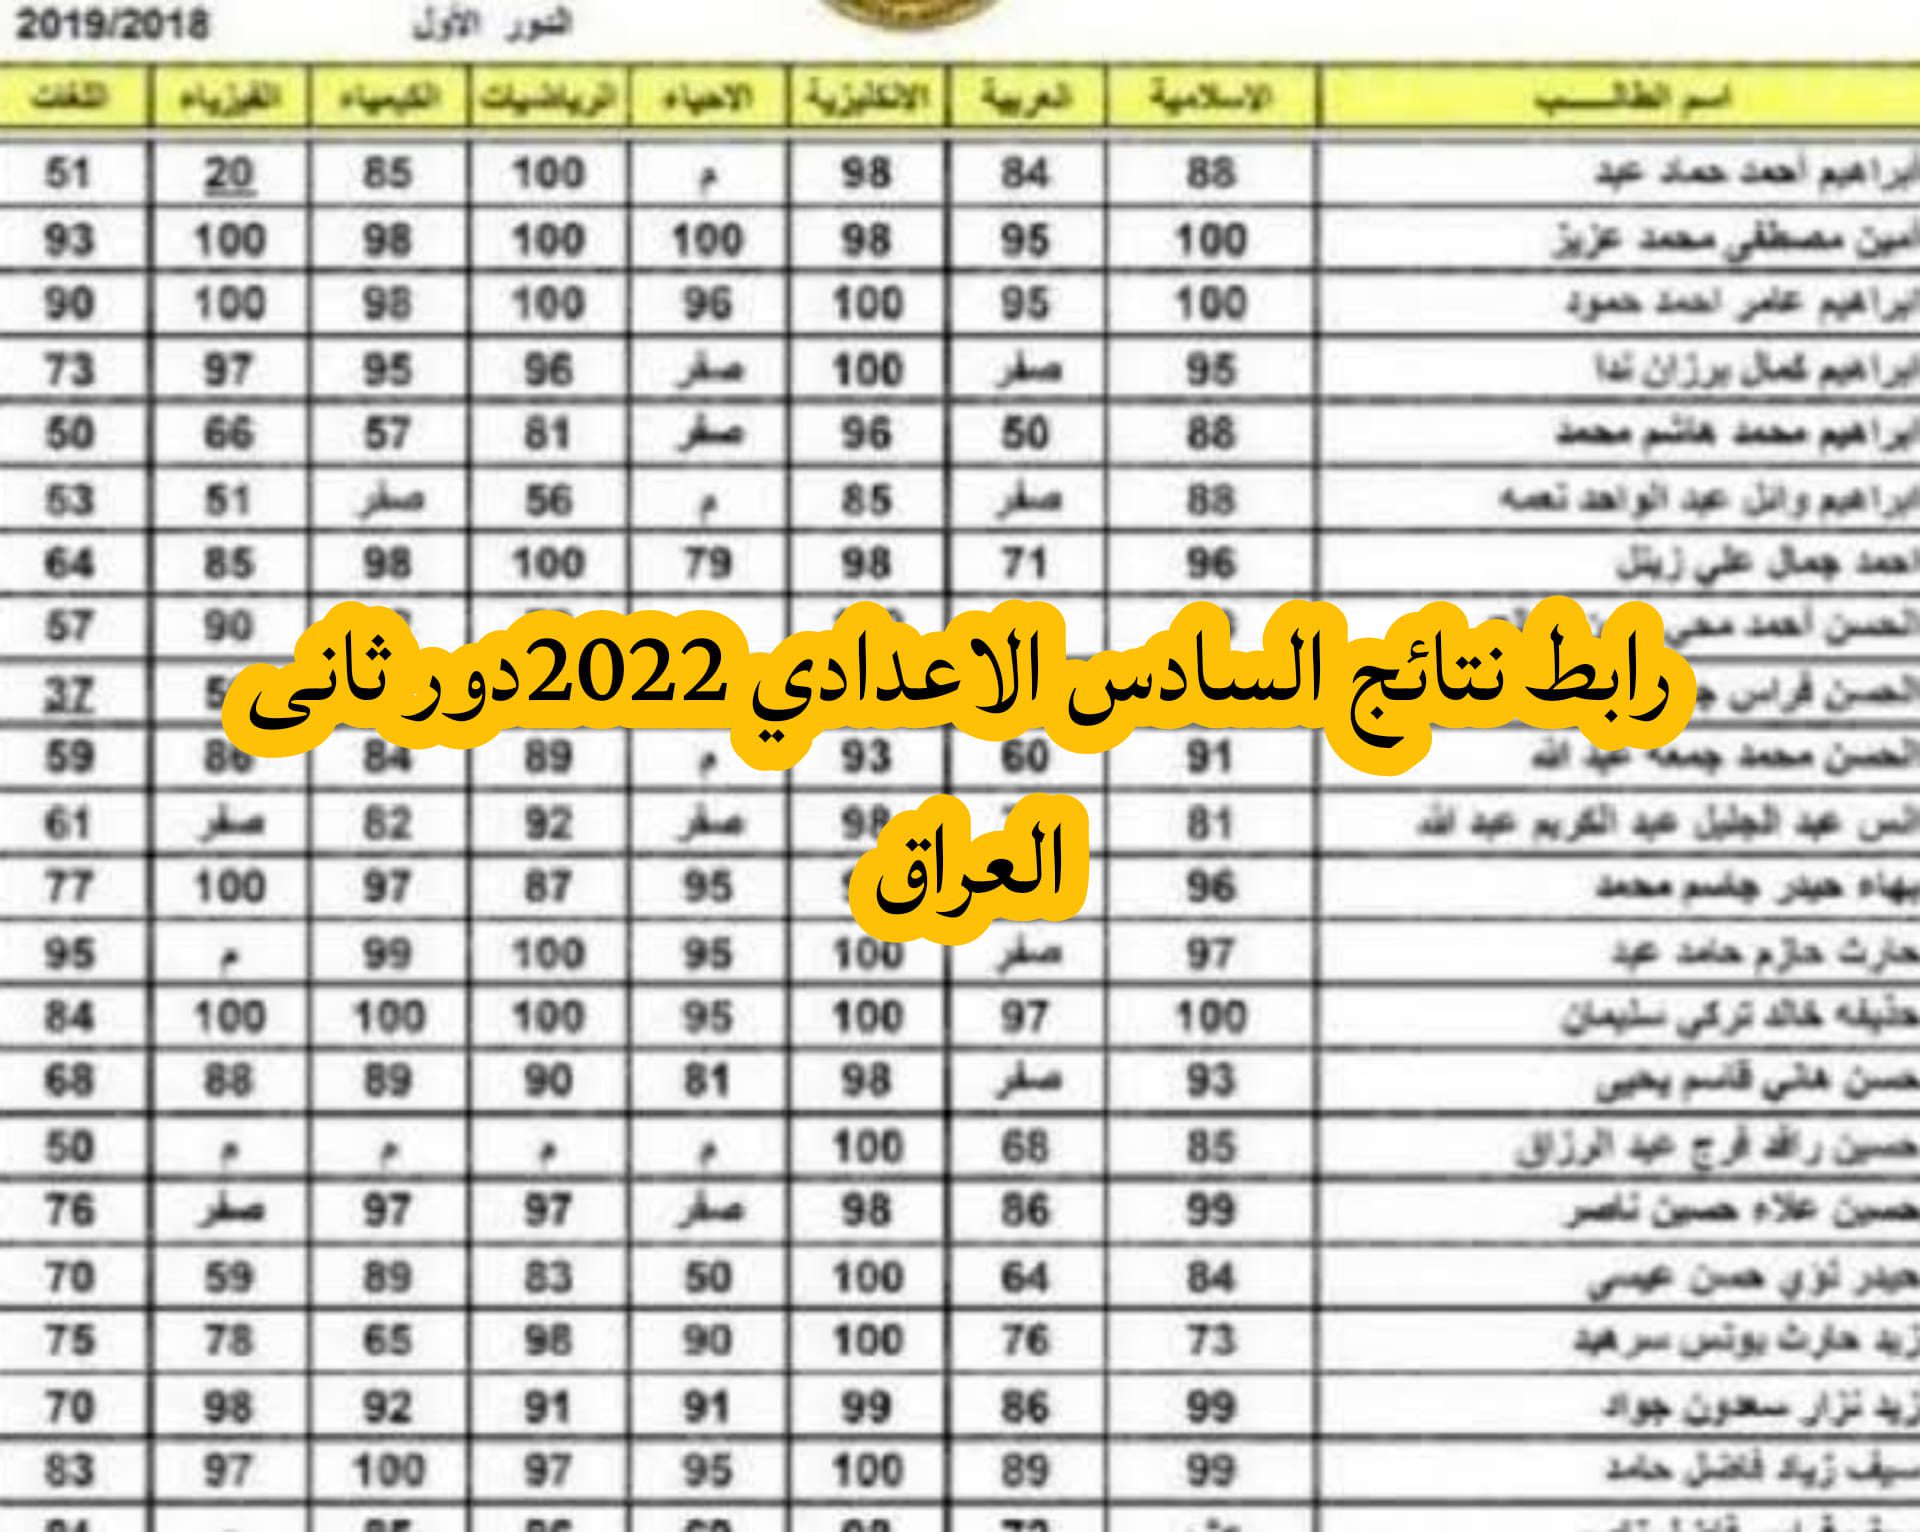 2022 6 - epedu.gov.iq رابط نتائج السادس الإعدادي 2022 دور ثاني بالعراق عبر موقع وزارة التربية العراقية